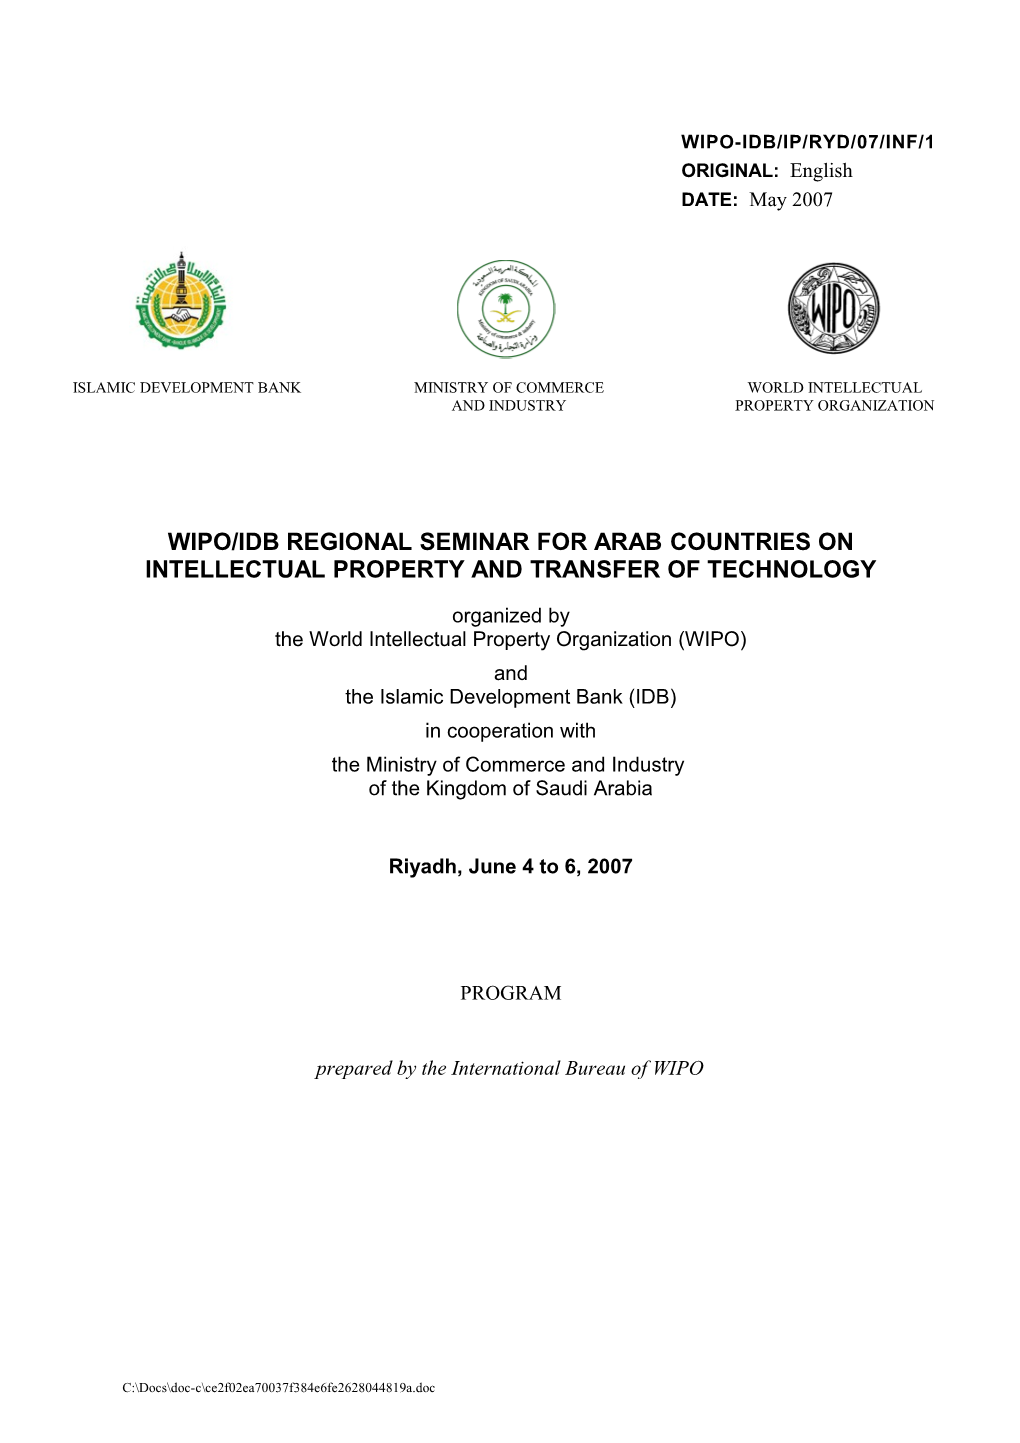 WIPO-IDB/IP/RYD/07/INF/1: Program